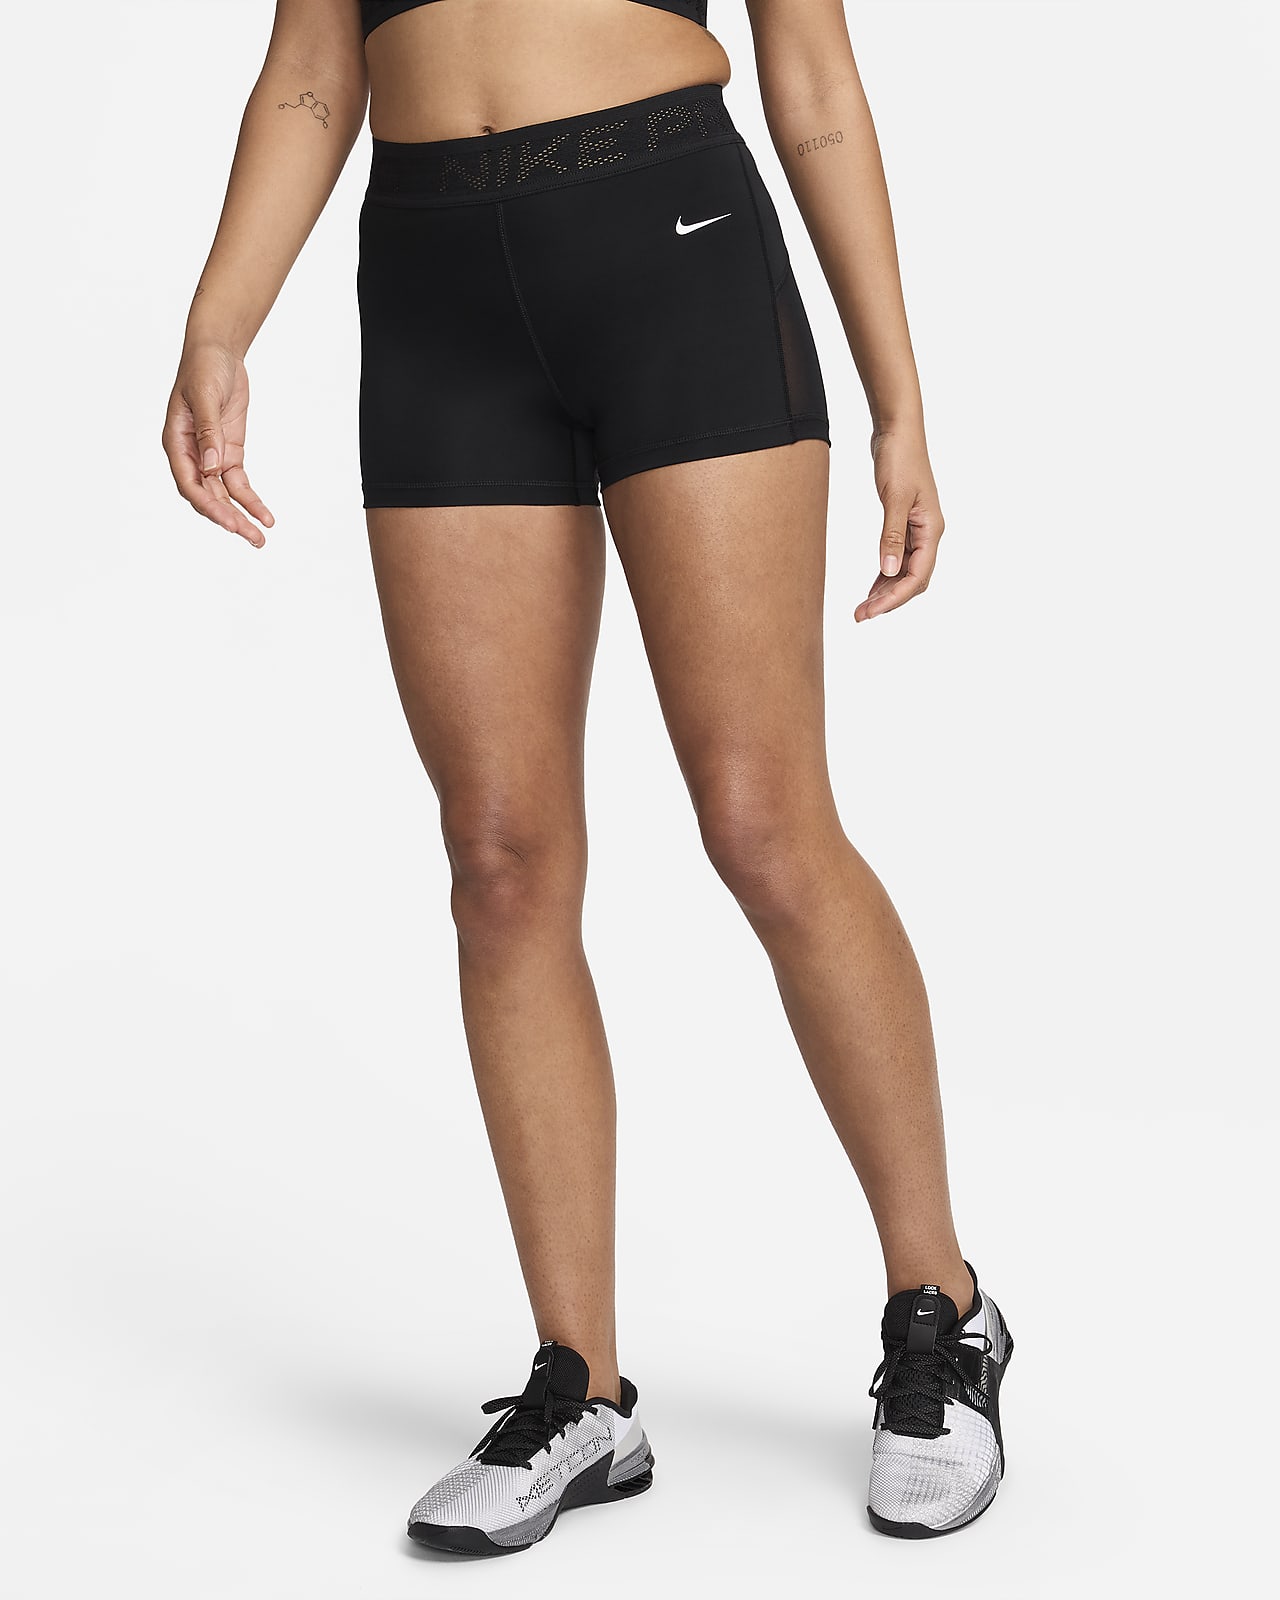 Γυναικείο σορτς μεσαίου καβάλου με φάσες από διχτυωτό υλικό Nike Pro 8 cm